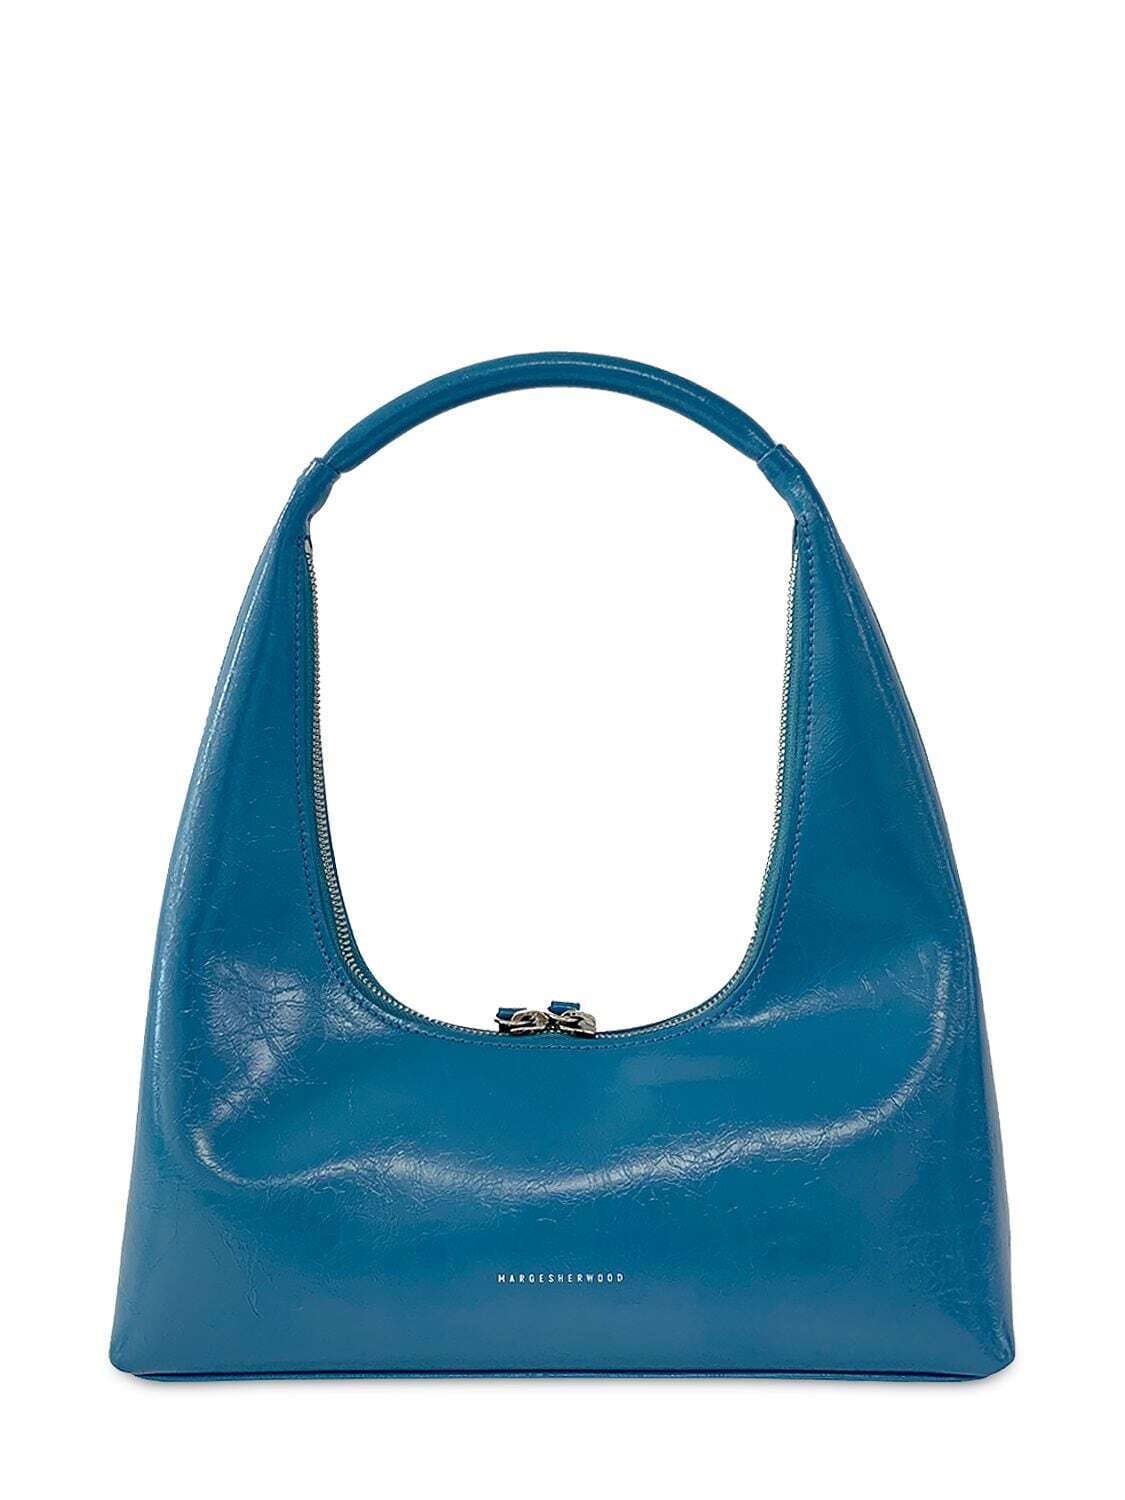 MARGE SHERWOOD Hobo Leather Shoulder Bag in blue